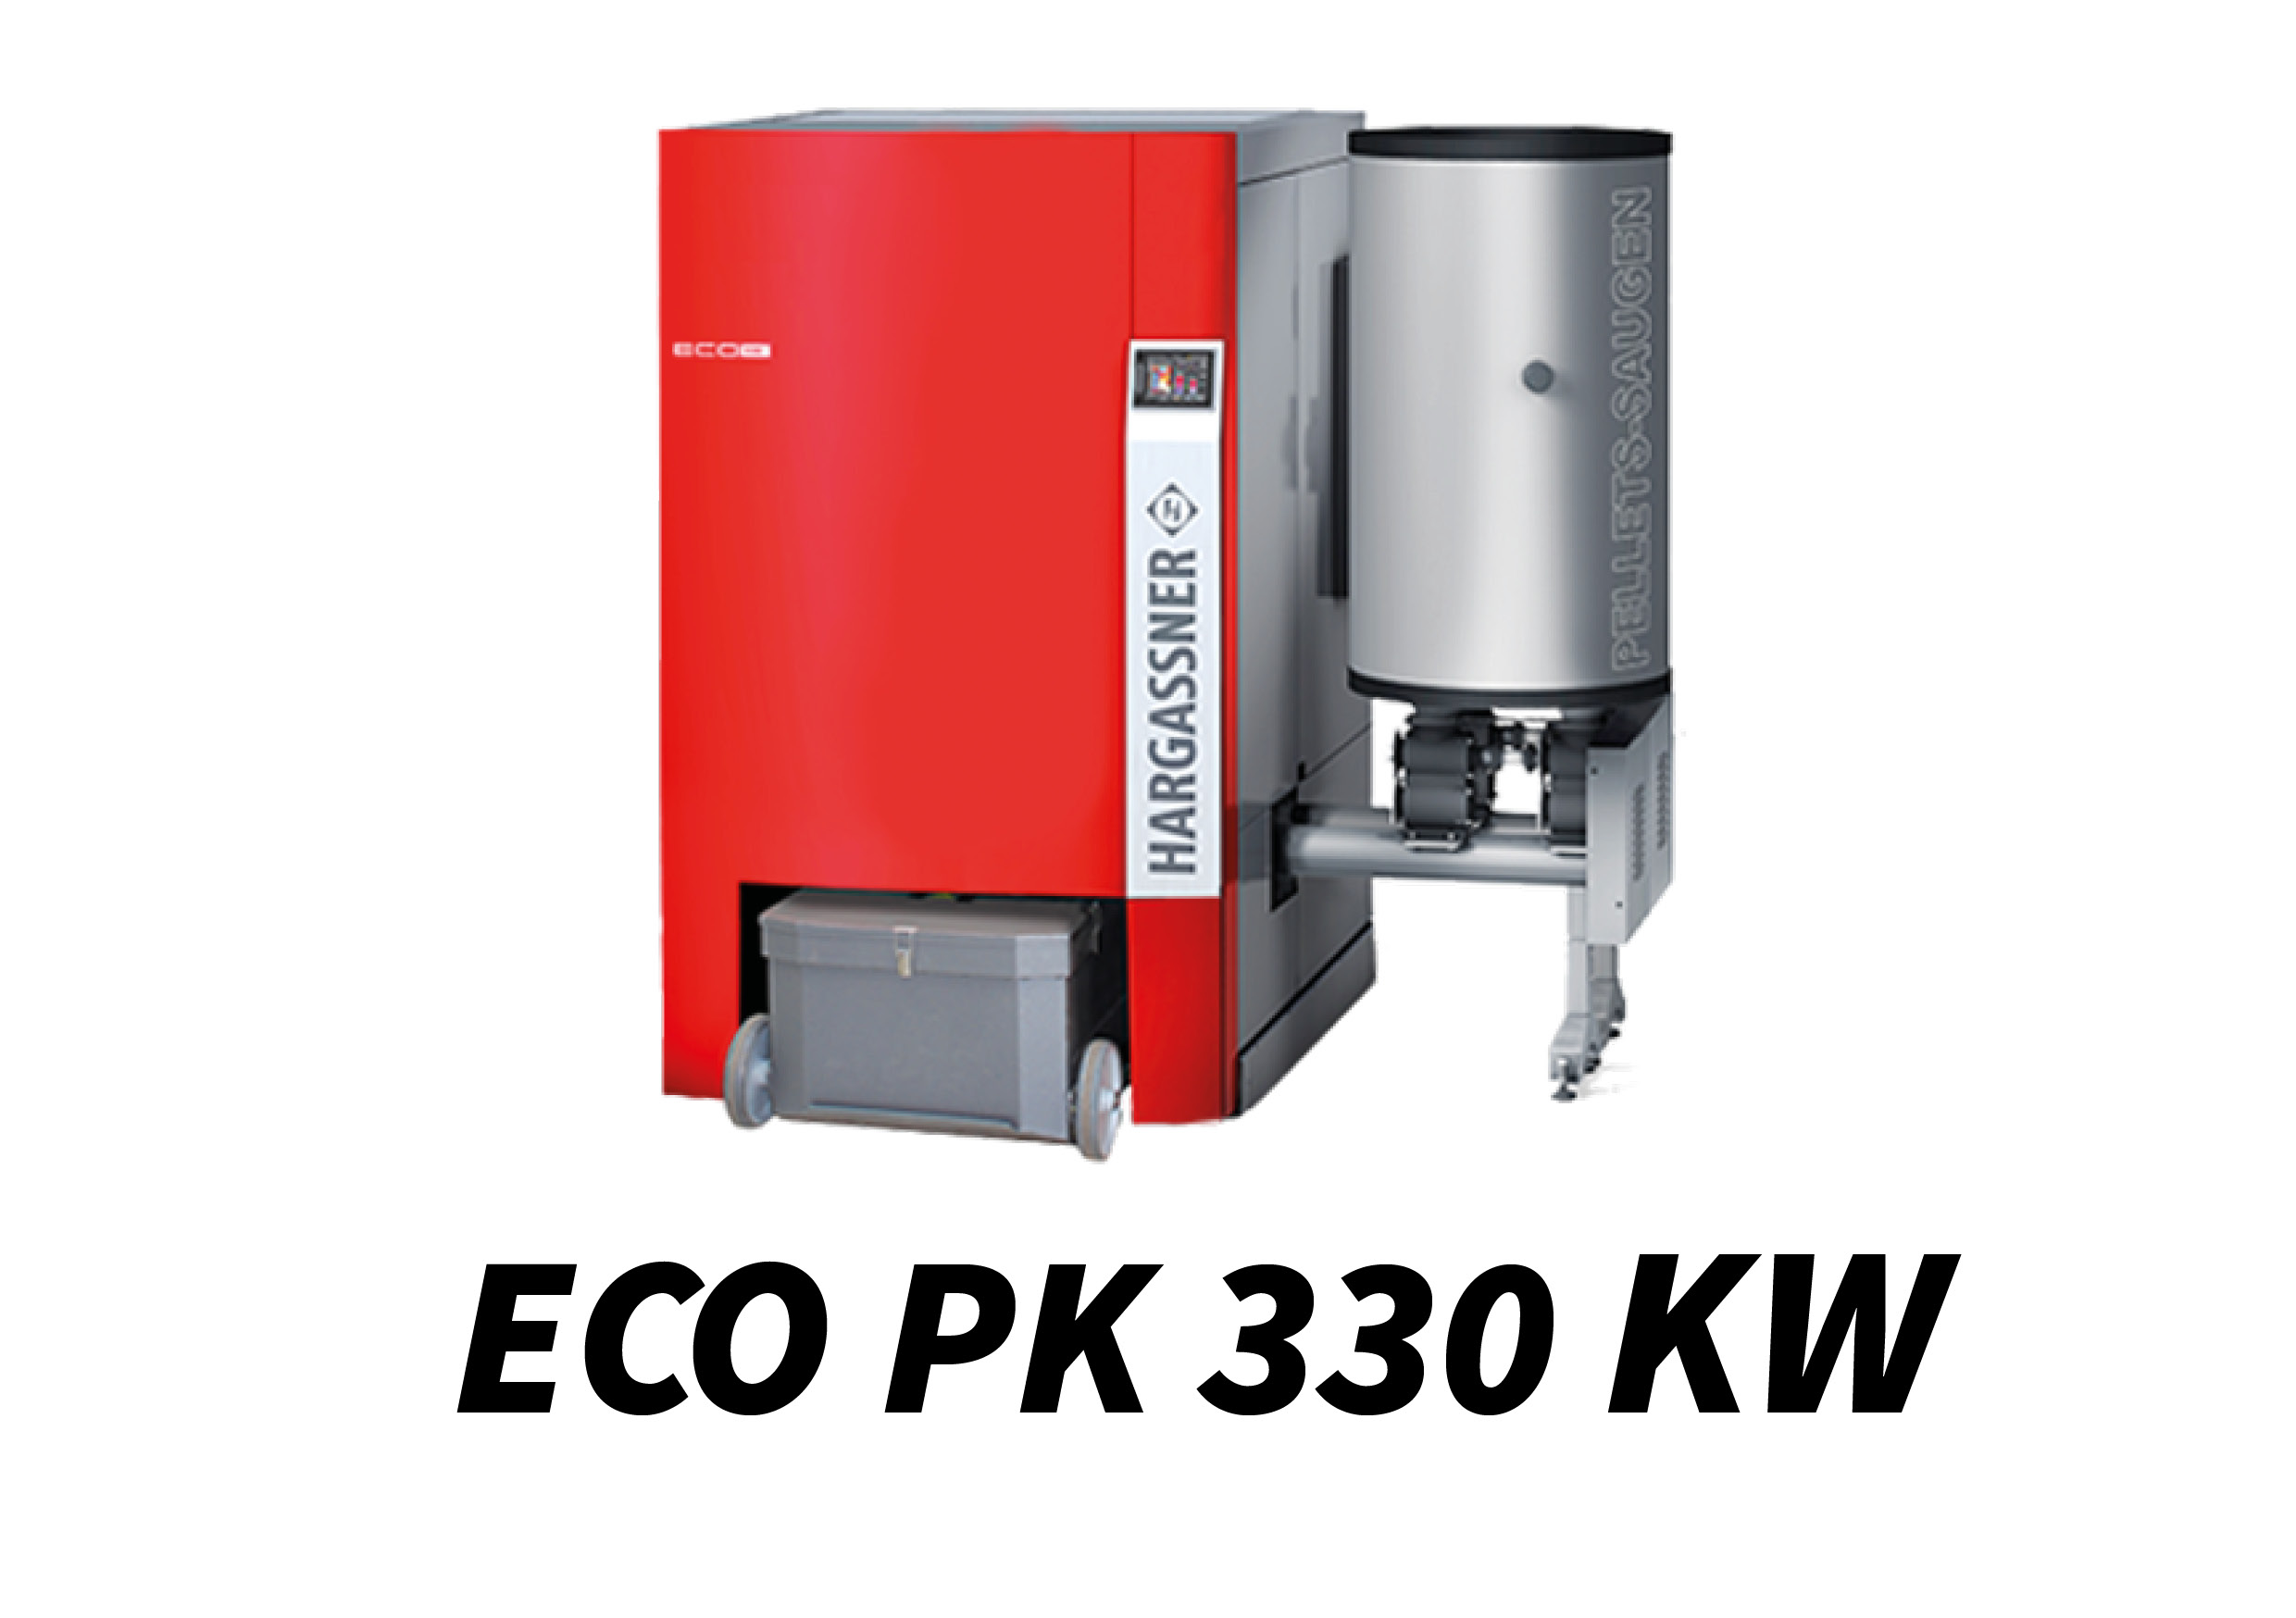 ECO PK 330 kW